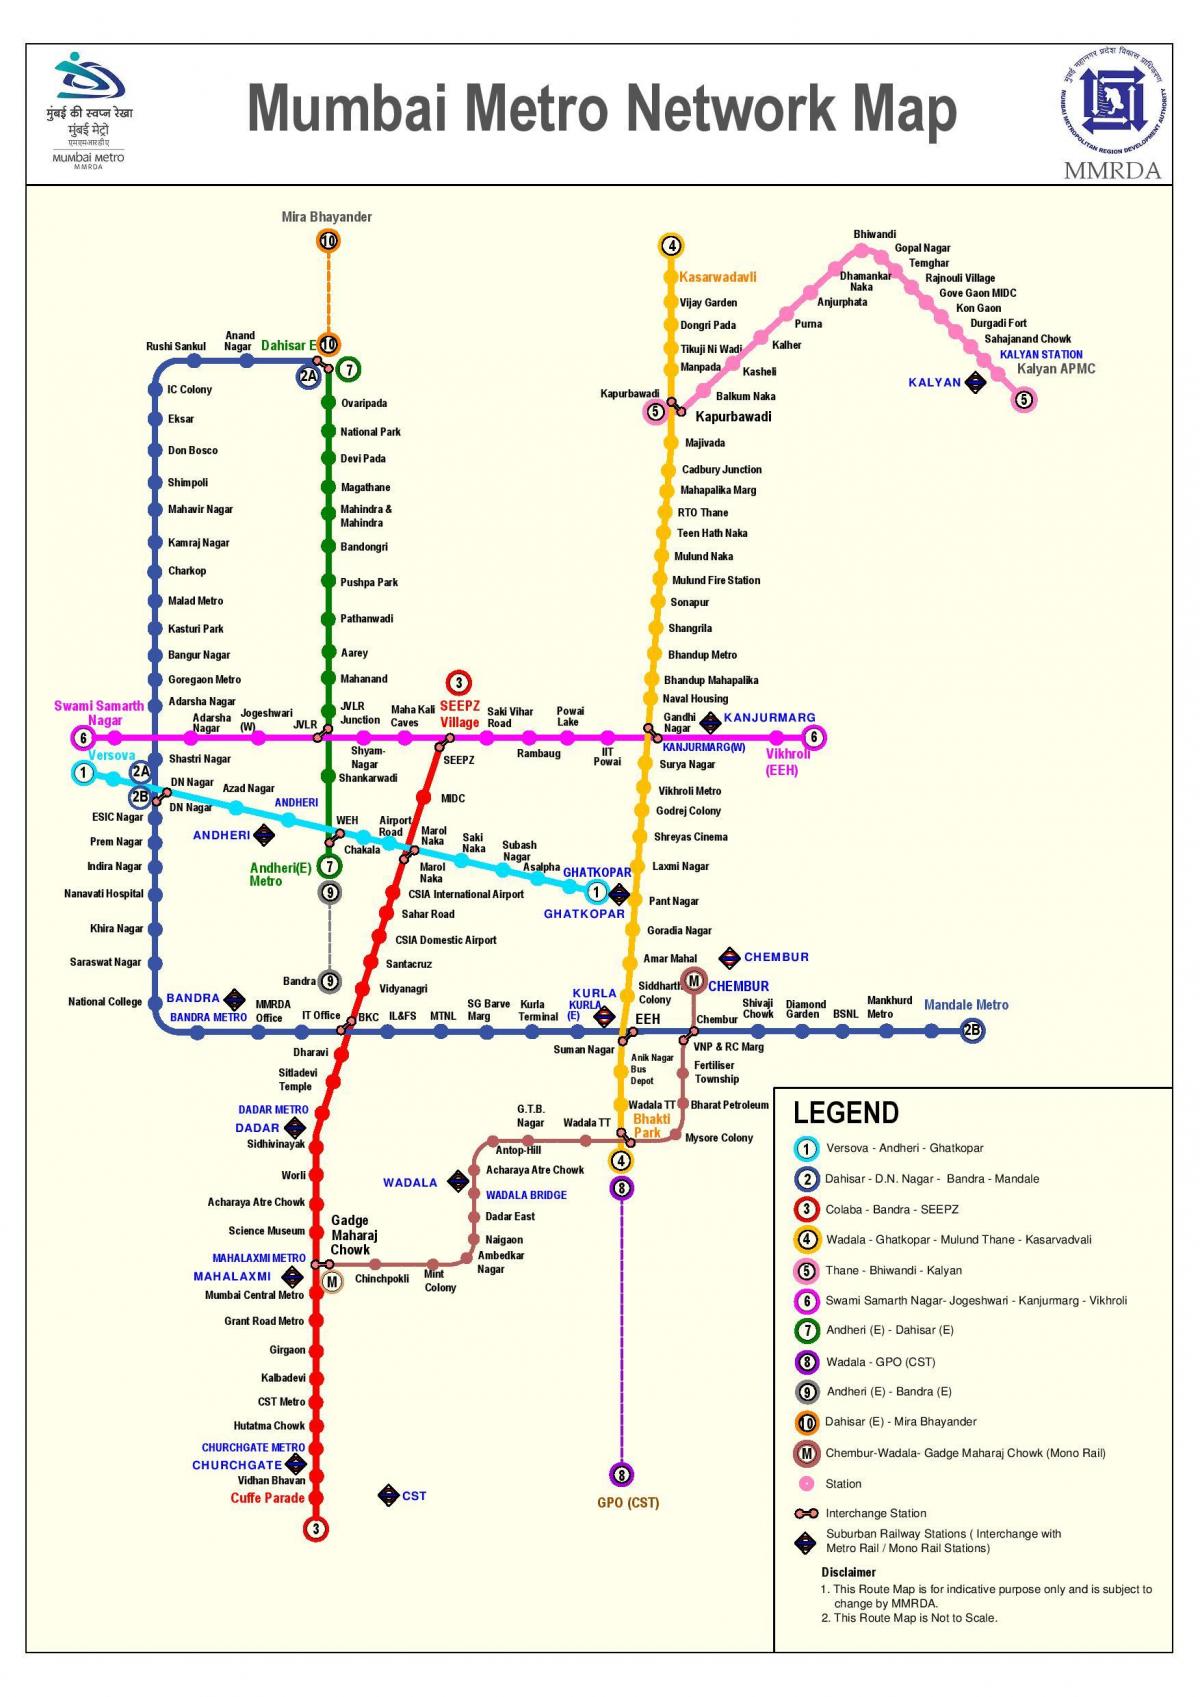 ムンバイメトロ線の3路線図